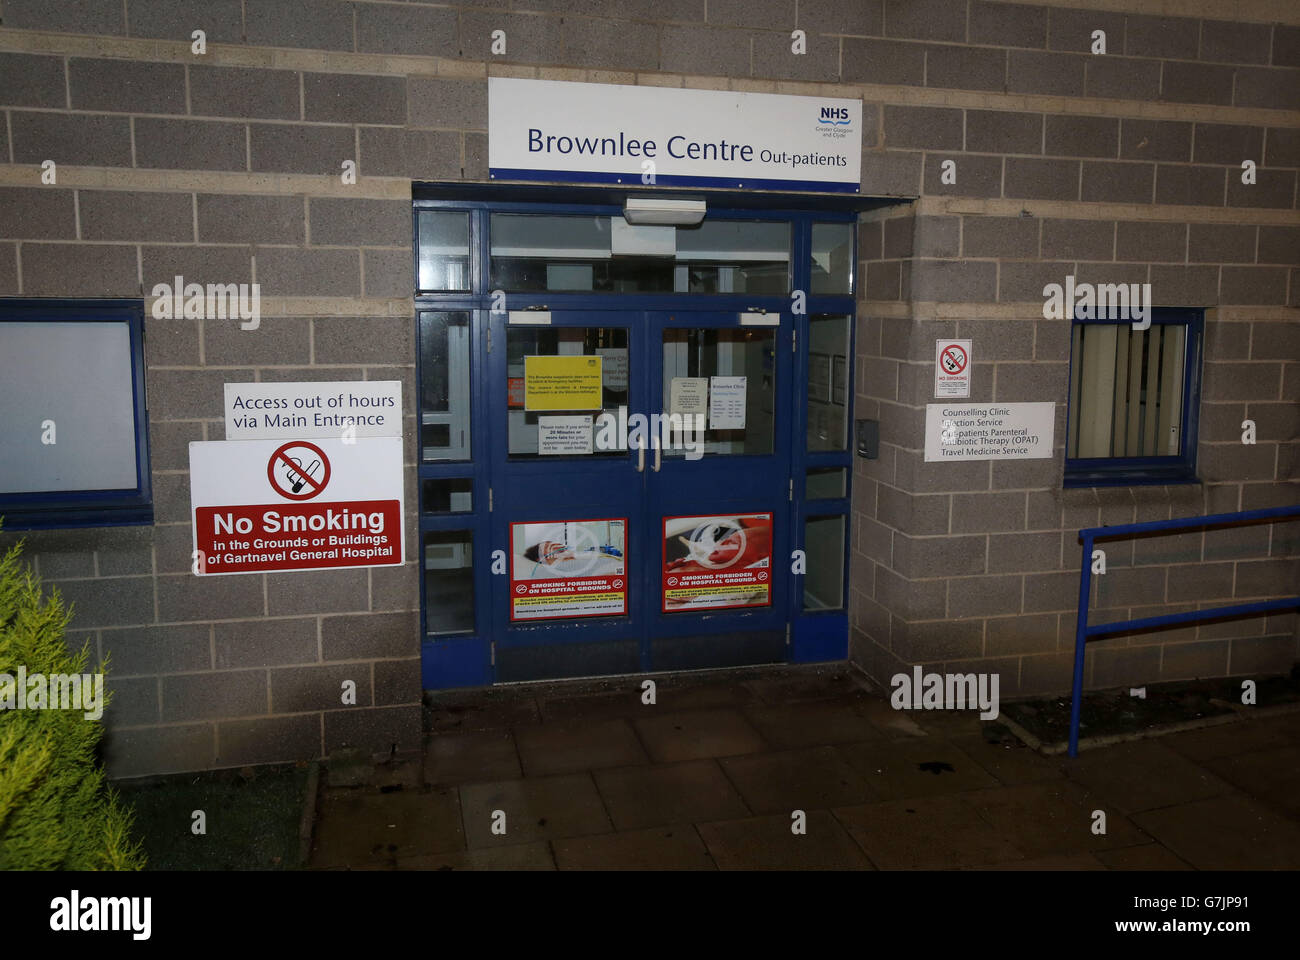 L'ingresso per l'unità Brownlee per le malattie infettive presso il campus dell'ospedale Gartnavel, Glasgow, dove un operatore sanitario rientrato dalla Sierra Leone la notte scorsa sta ricevendo cure dopo la diagnosi di Ebola. Foto Stock